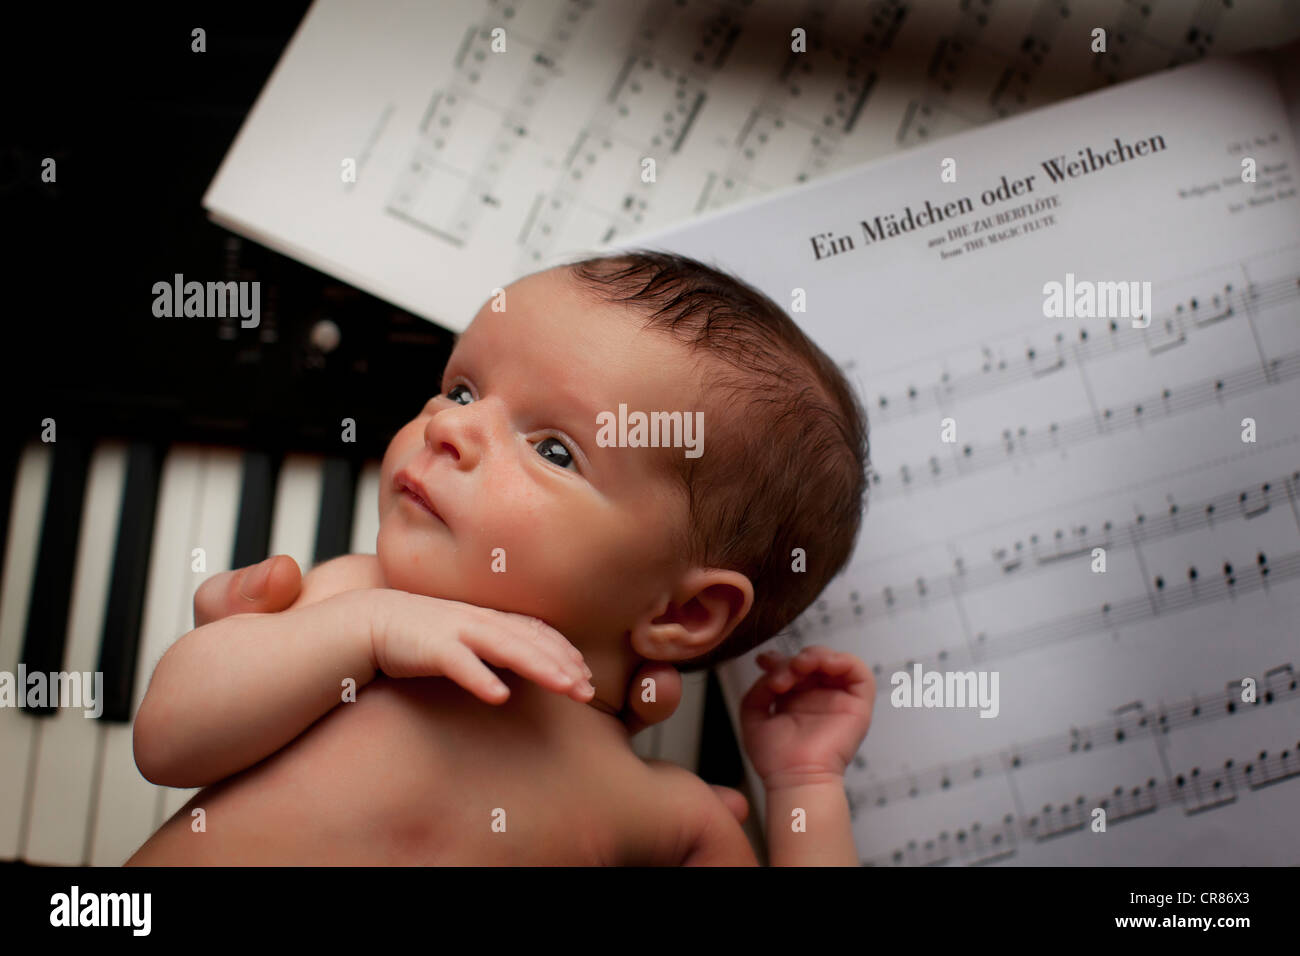 Bébé nouveau-né, deux semaines, piano, partitions Photo Stock - Alamy